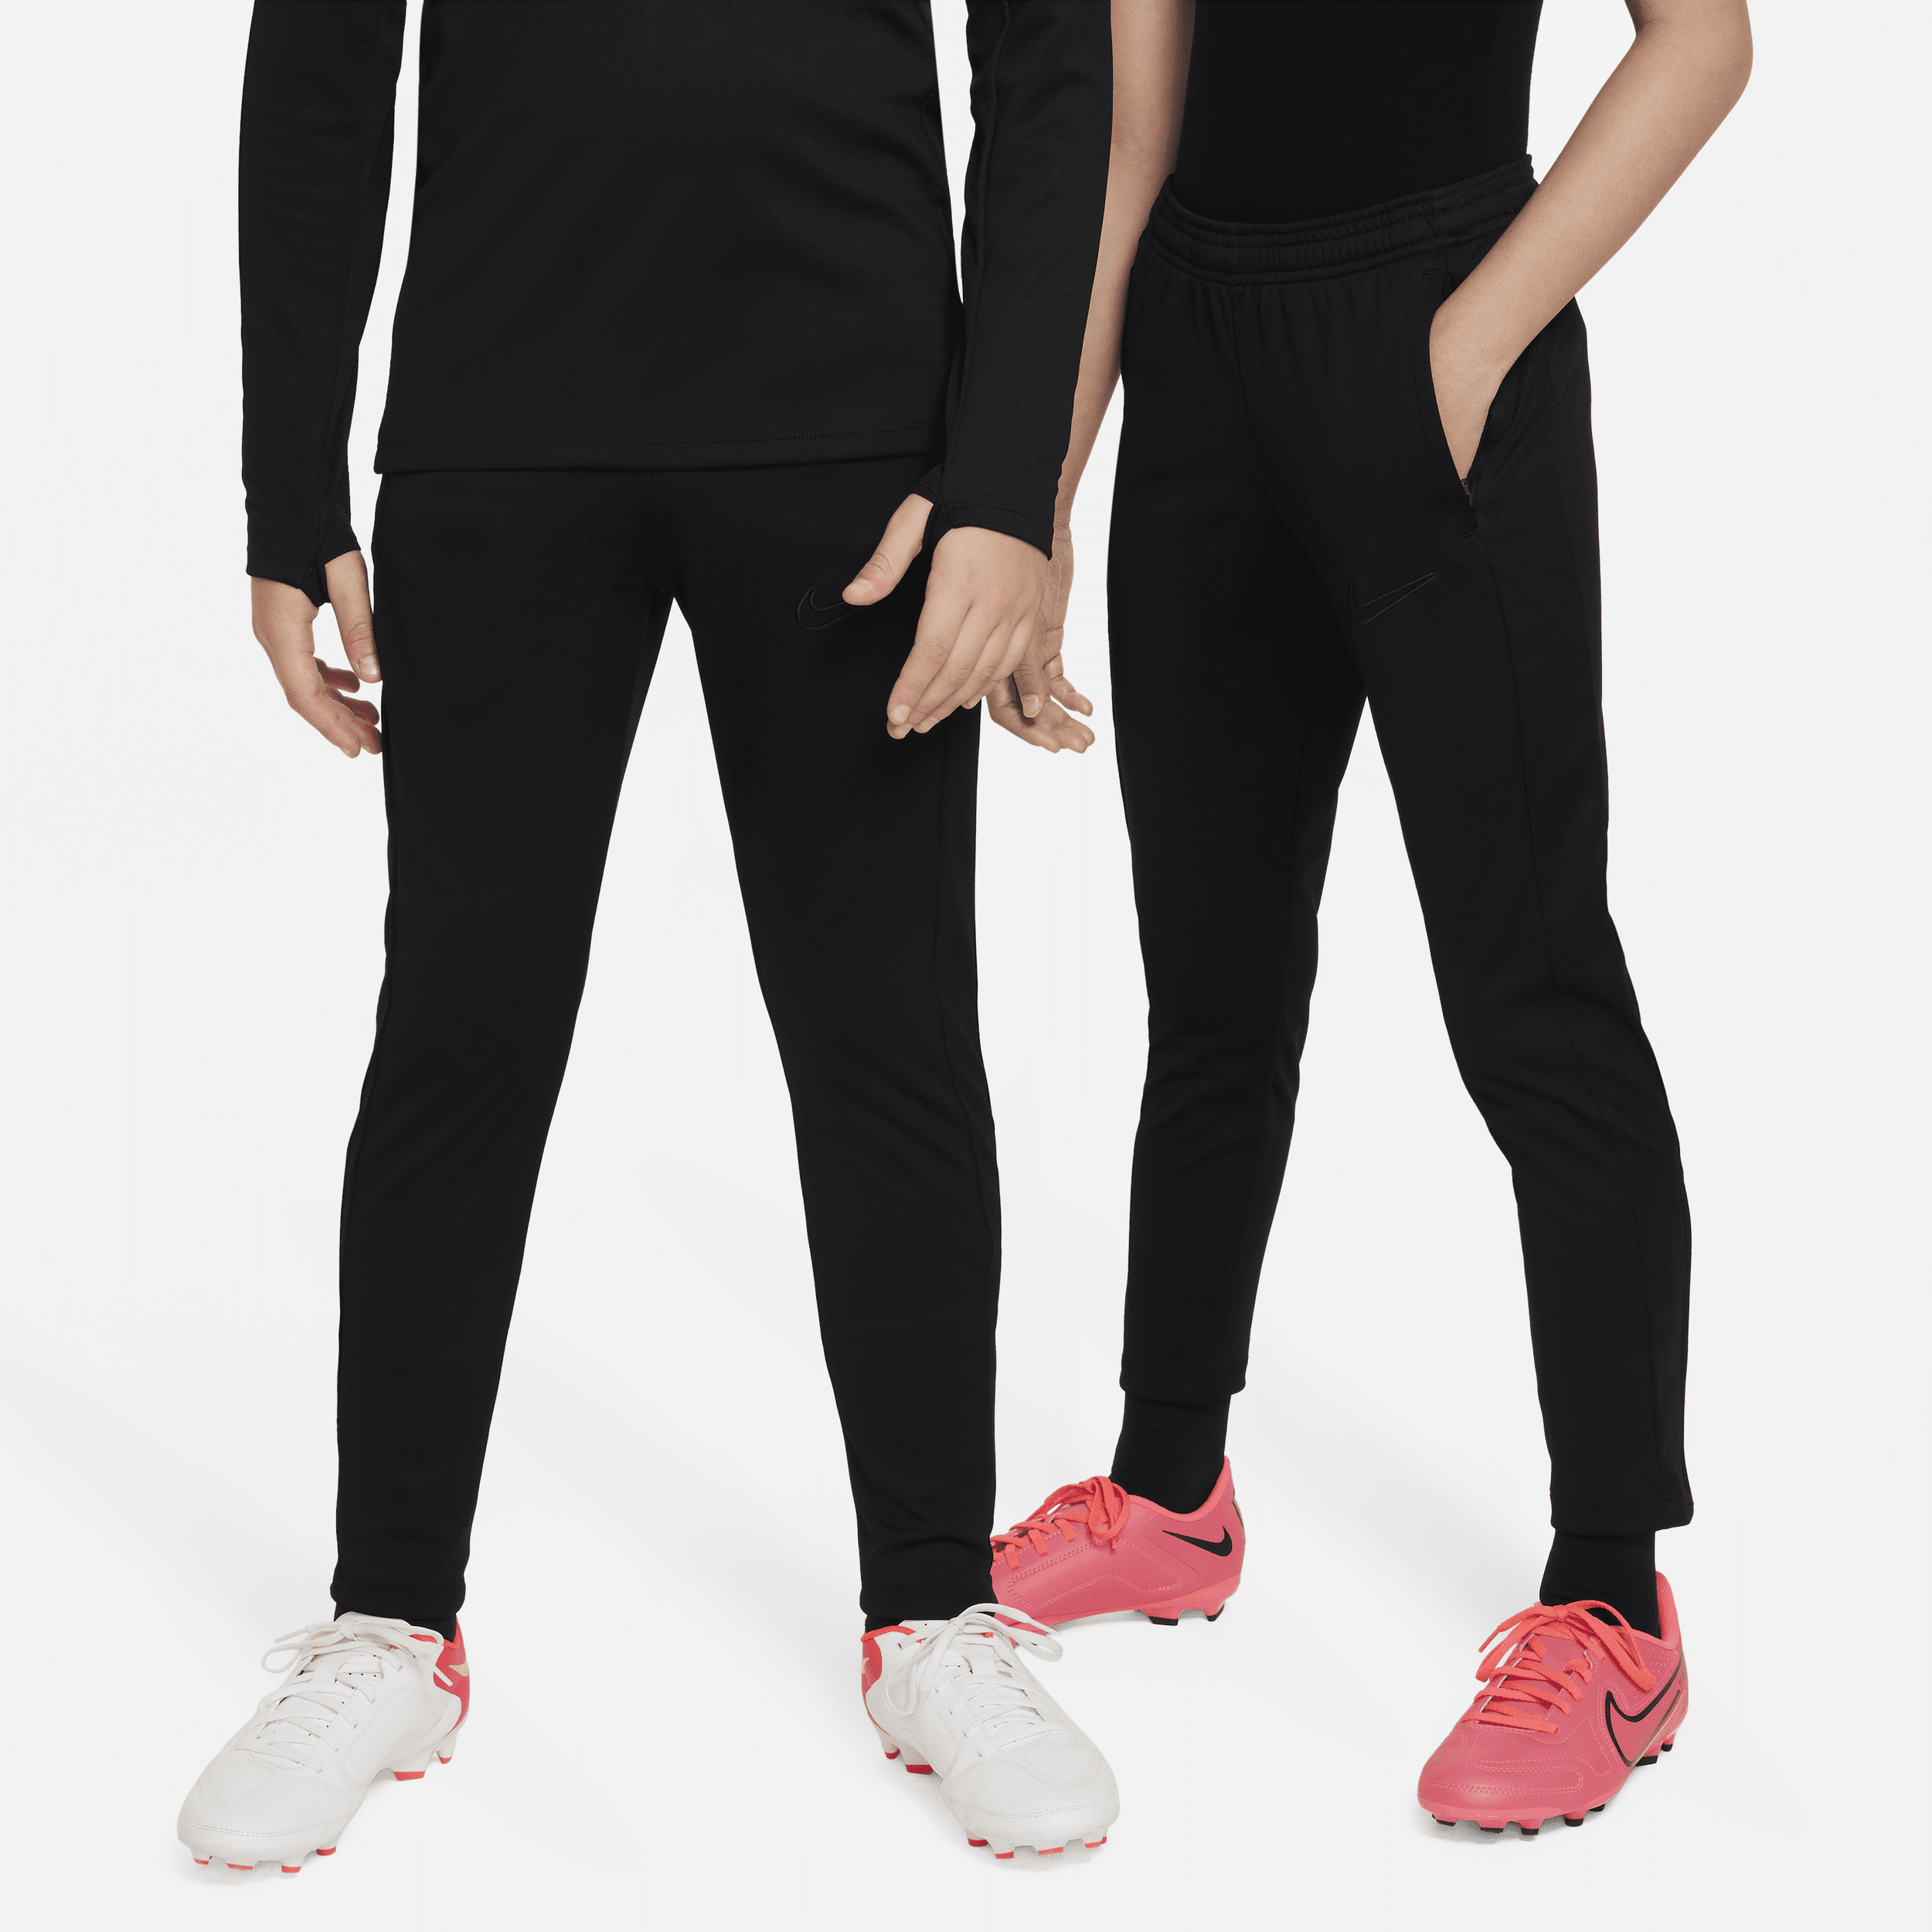 Nike Dri-FIT Academy23 Pantalón de fútbol - Niño/a - Negro